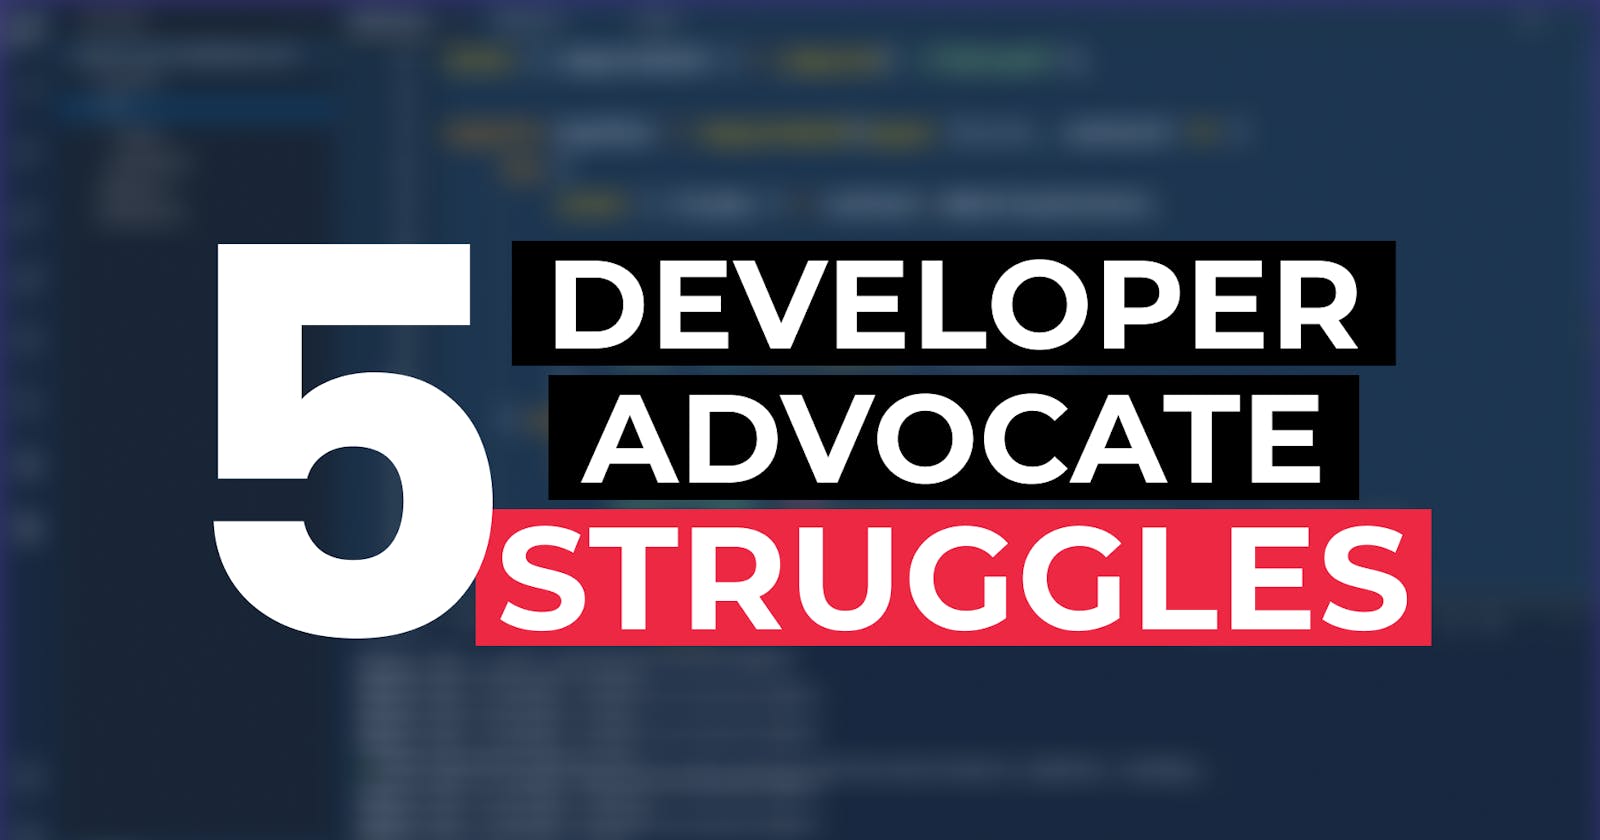 Top 5 Struggles of a Developer Advocate